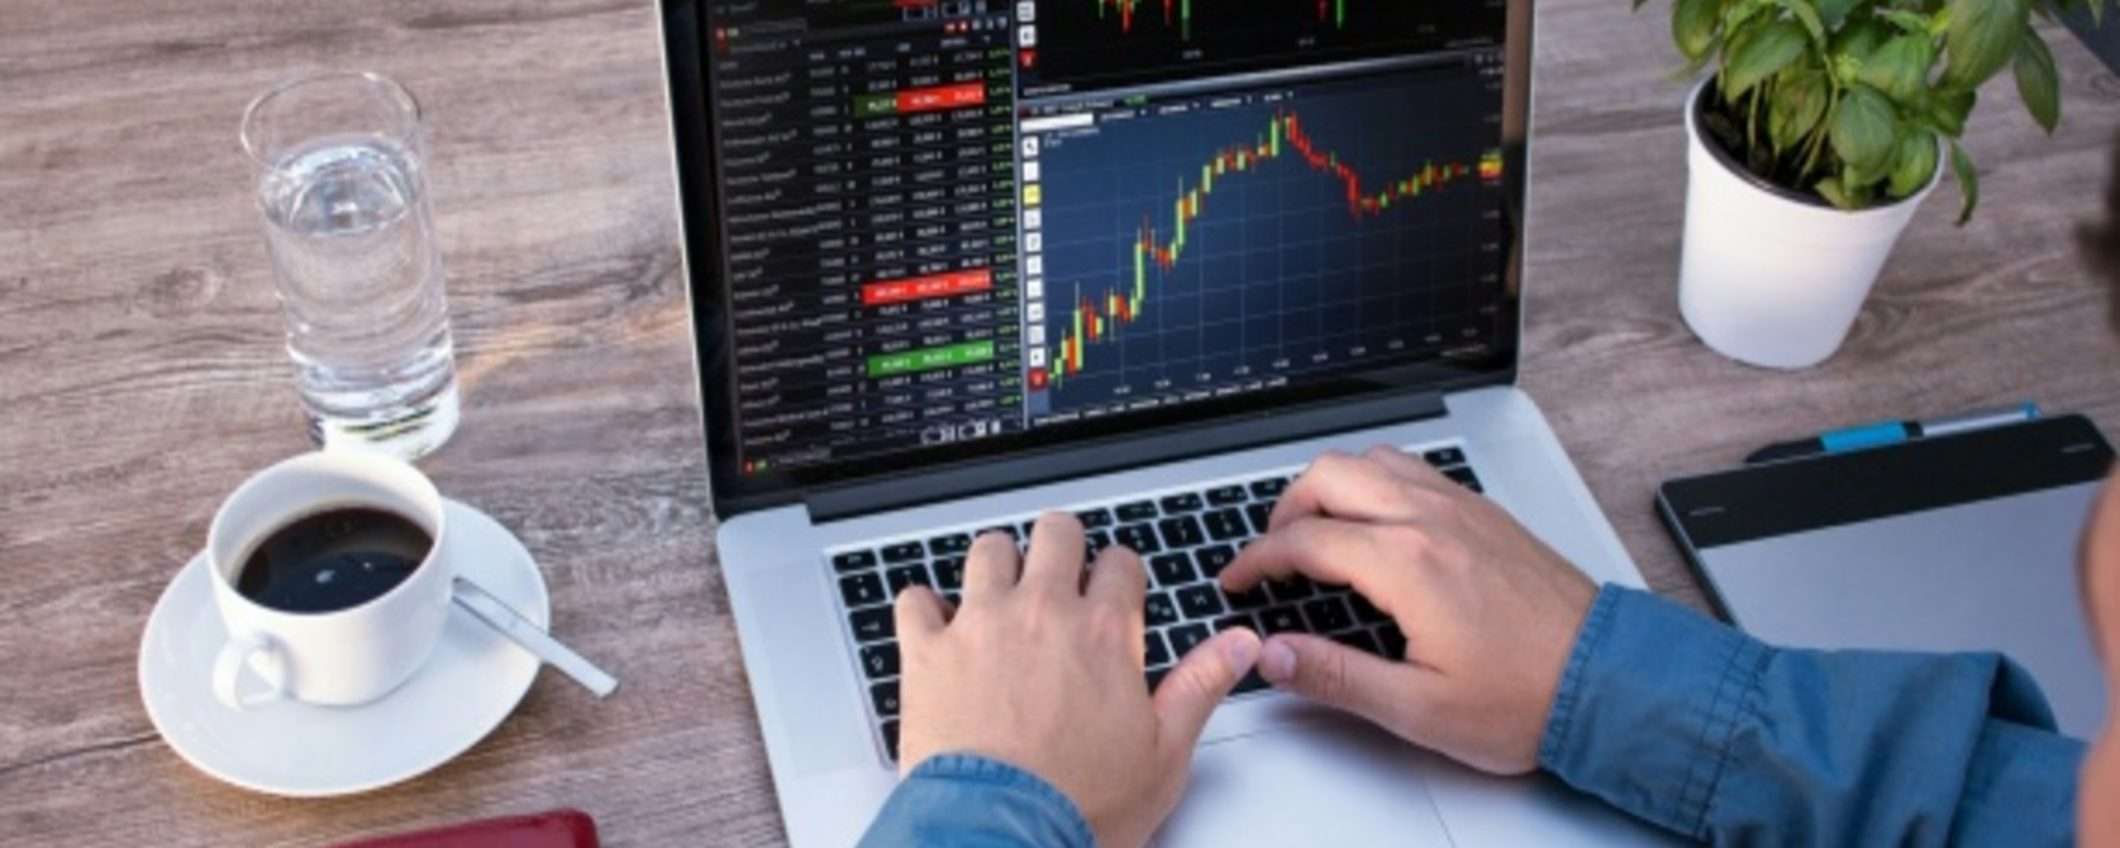 Trading sul Forex: il miglior conto demo per iniziare ad investire